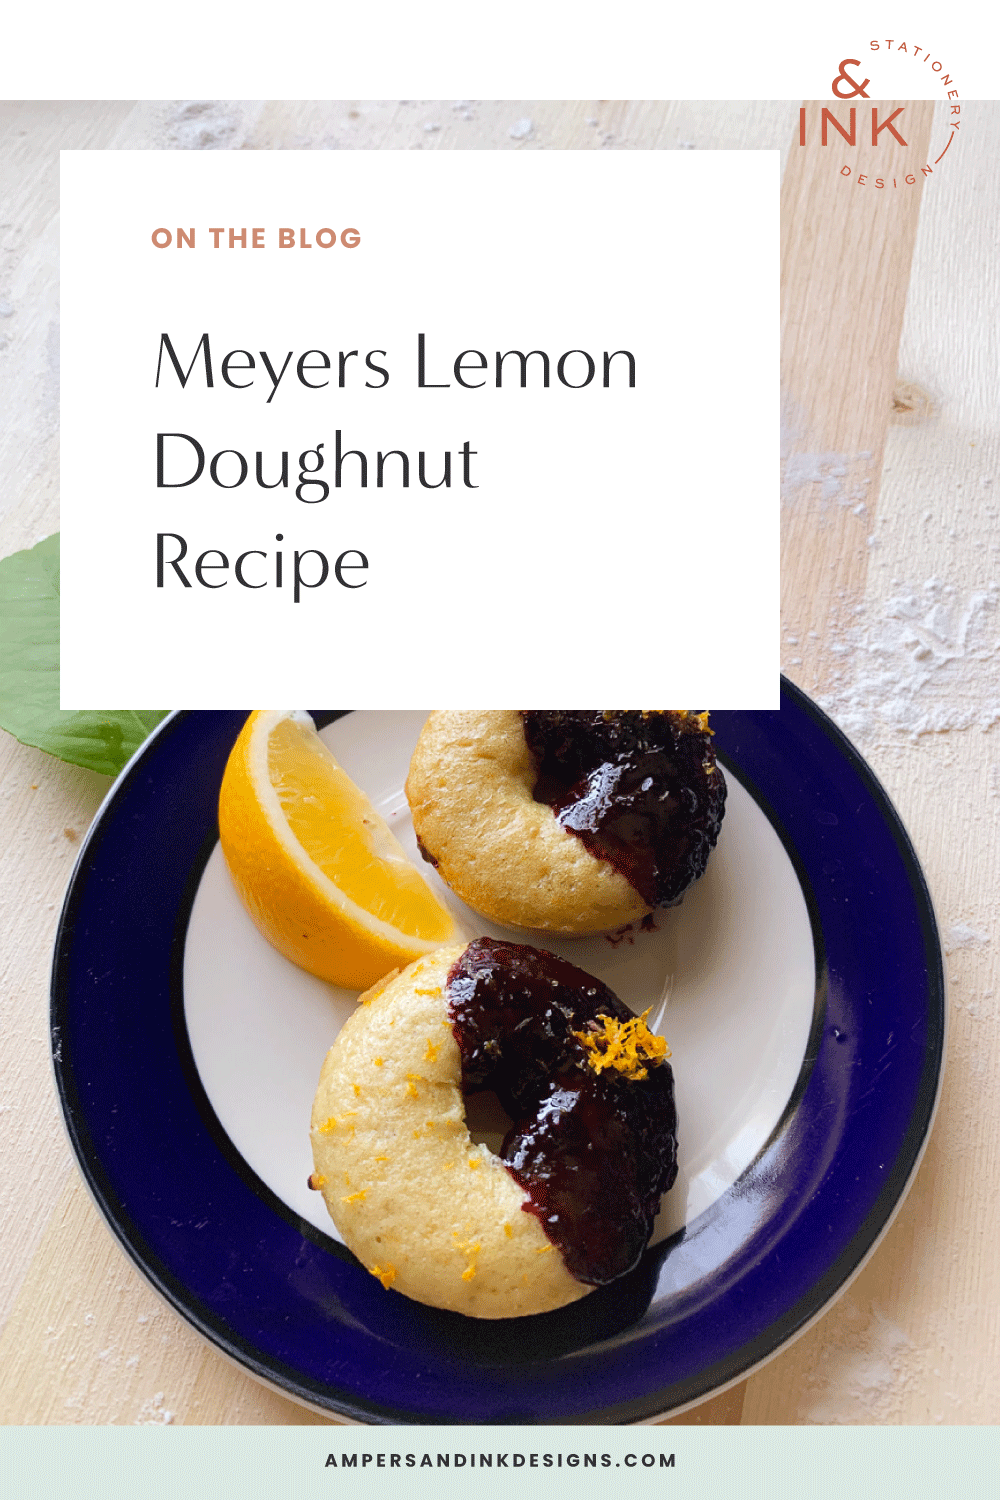 Meyers Lemon Doughnut Recipe on the blog